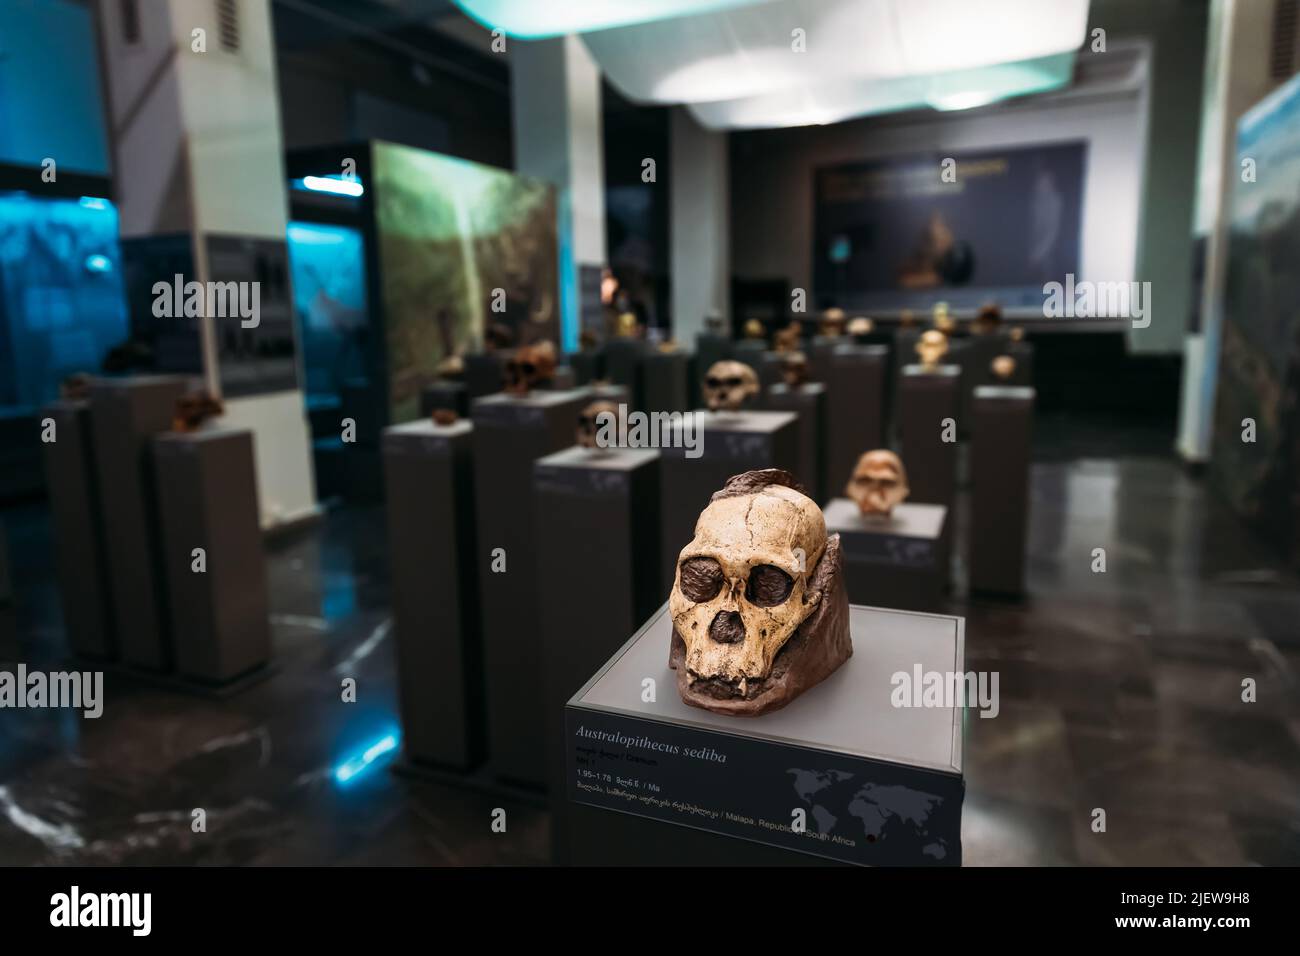 Museum Allgemeine Ansicht Der Prähistorischen Schädel, Einschließlich Australopithecus Sediba Skull. Datiert Auf 1,95 - 1,78 Millionen Jahre. Holotyp Mh1. Habe ich entdeckt Stockfoto